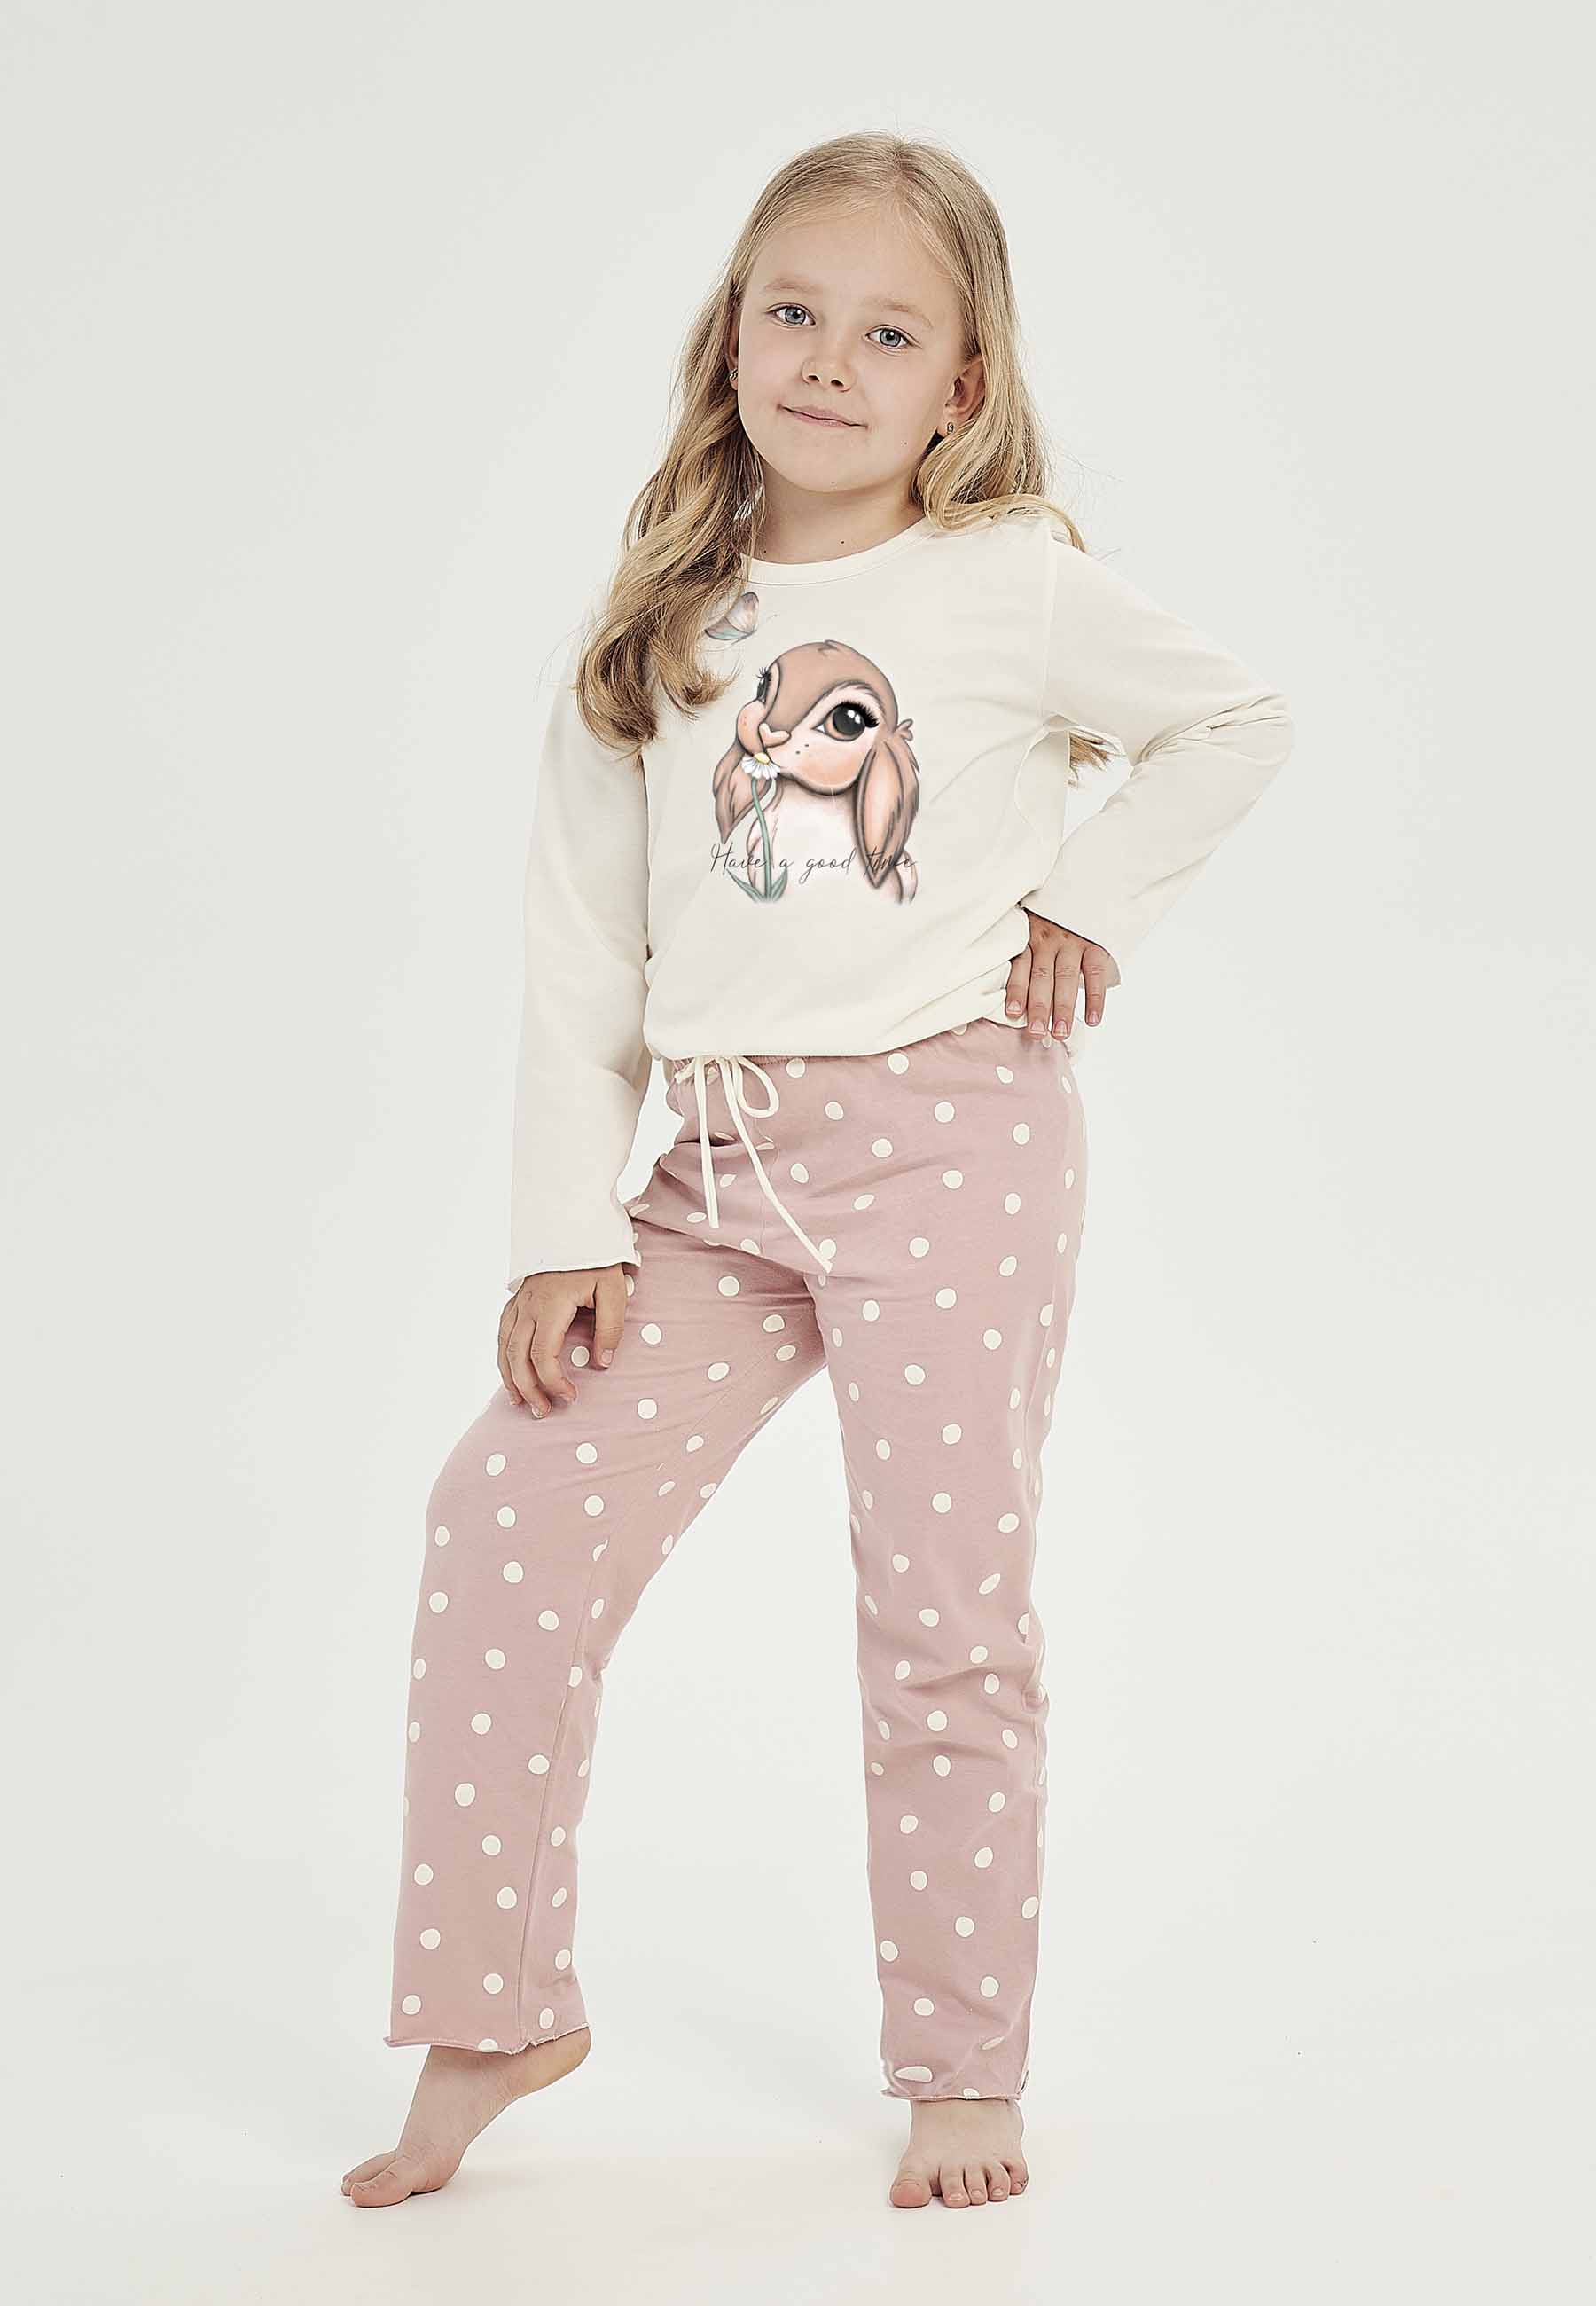 Różowo-kremowa piżama dziewczęca z nadrukiem króliczka marki Taro